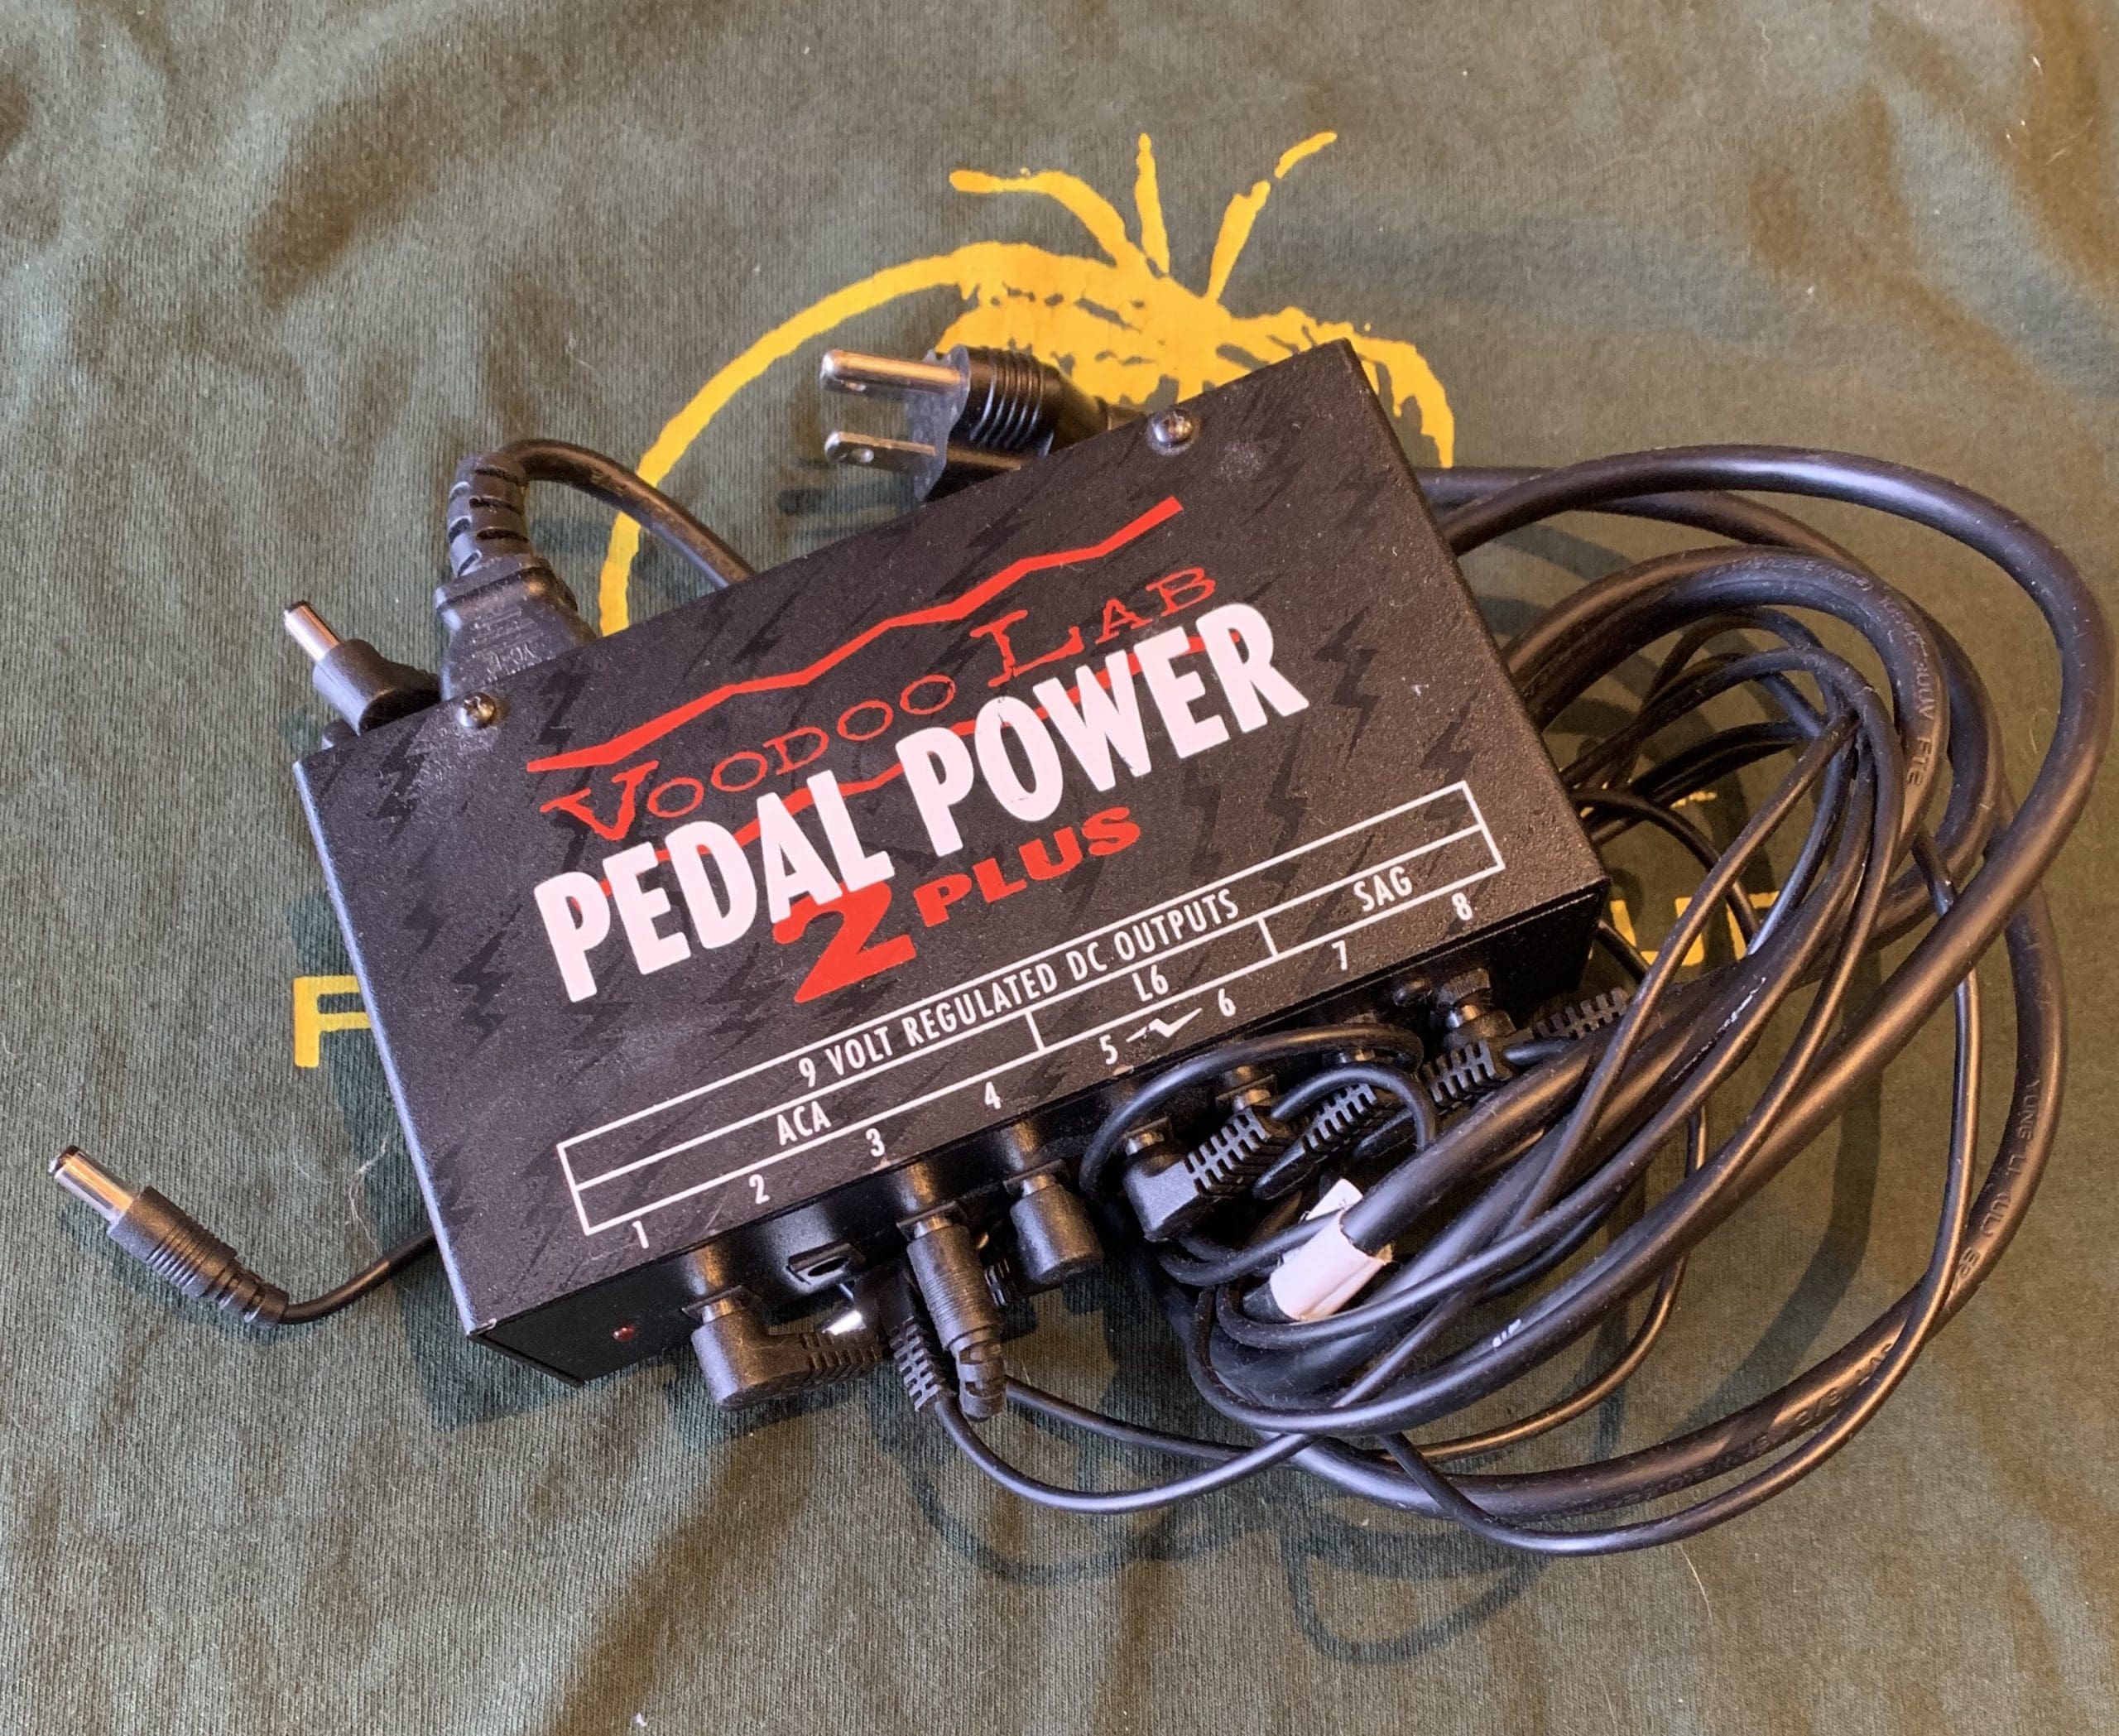 PEDAL POWER 2 PLUS - 配信機器・PA機器・レコーディング機器